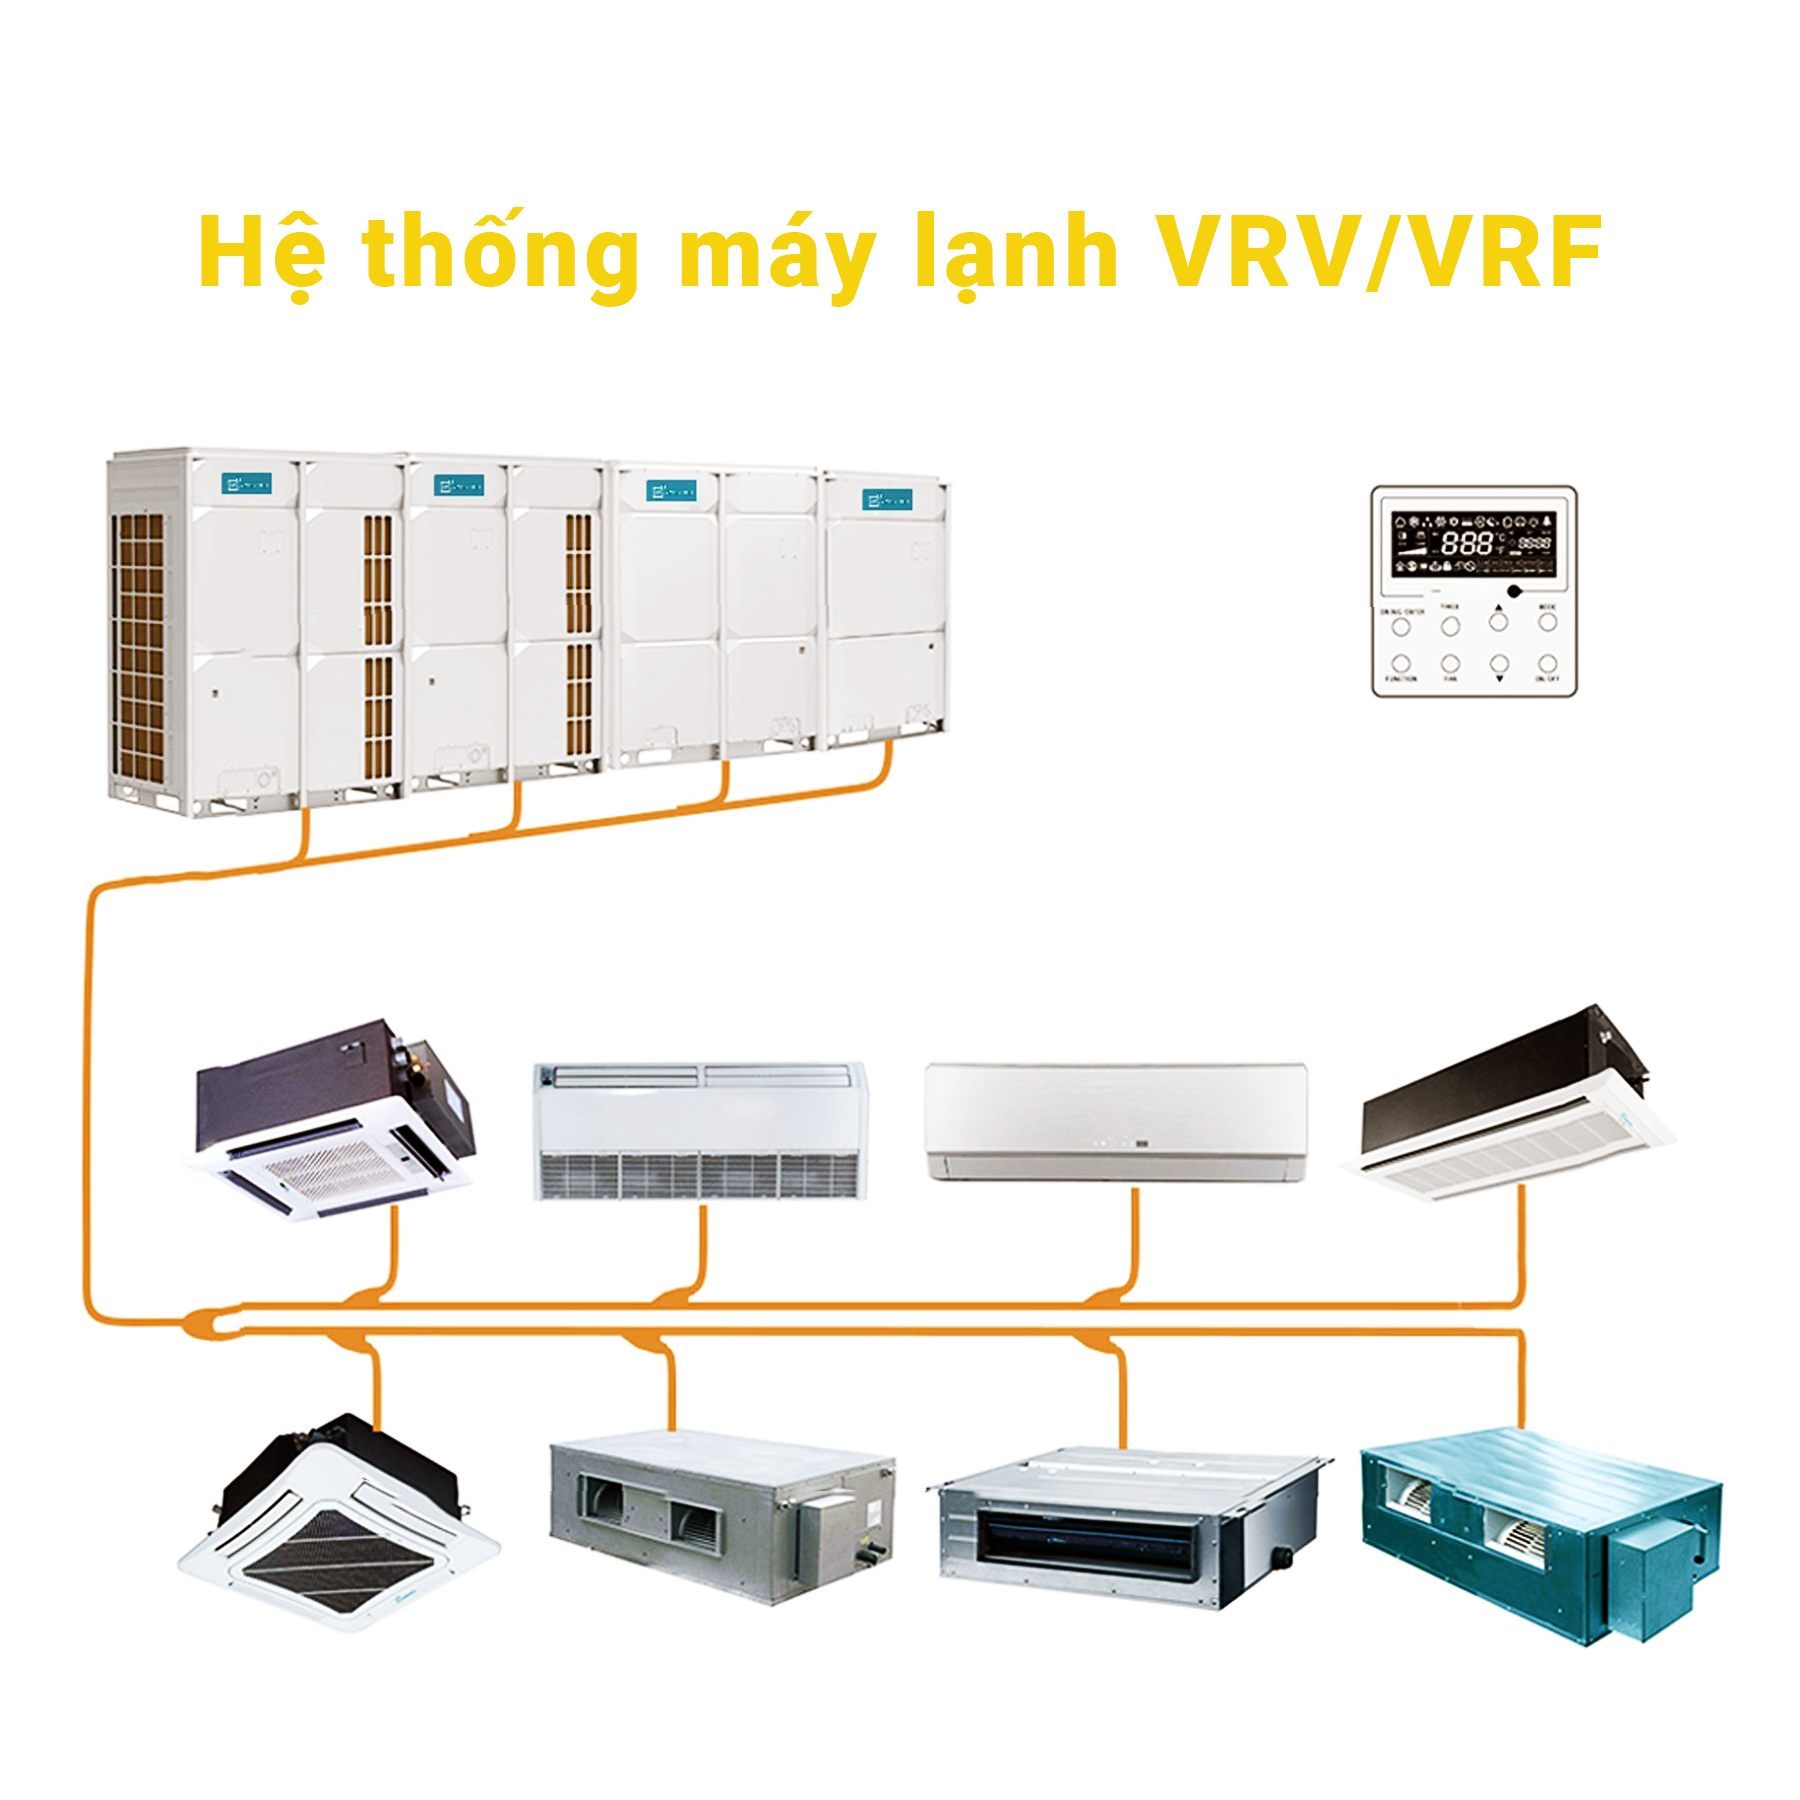 VRV là tên gọi về nguyên lý hoạt động lưu lượng môi chất lạnh thay đổi, còn được gọi là thể tích môi chất lạnh thay đổi, là một công nghệ HVAC được phát minh bởi Daikin Industries, Ltd. vào năm 1982.